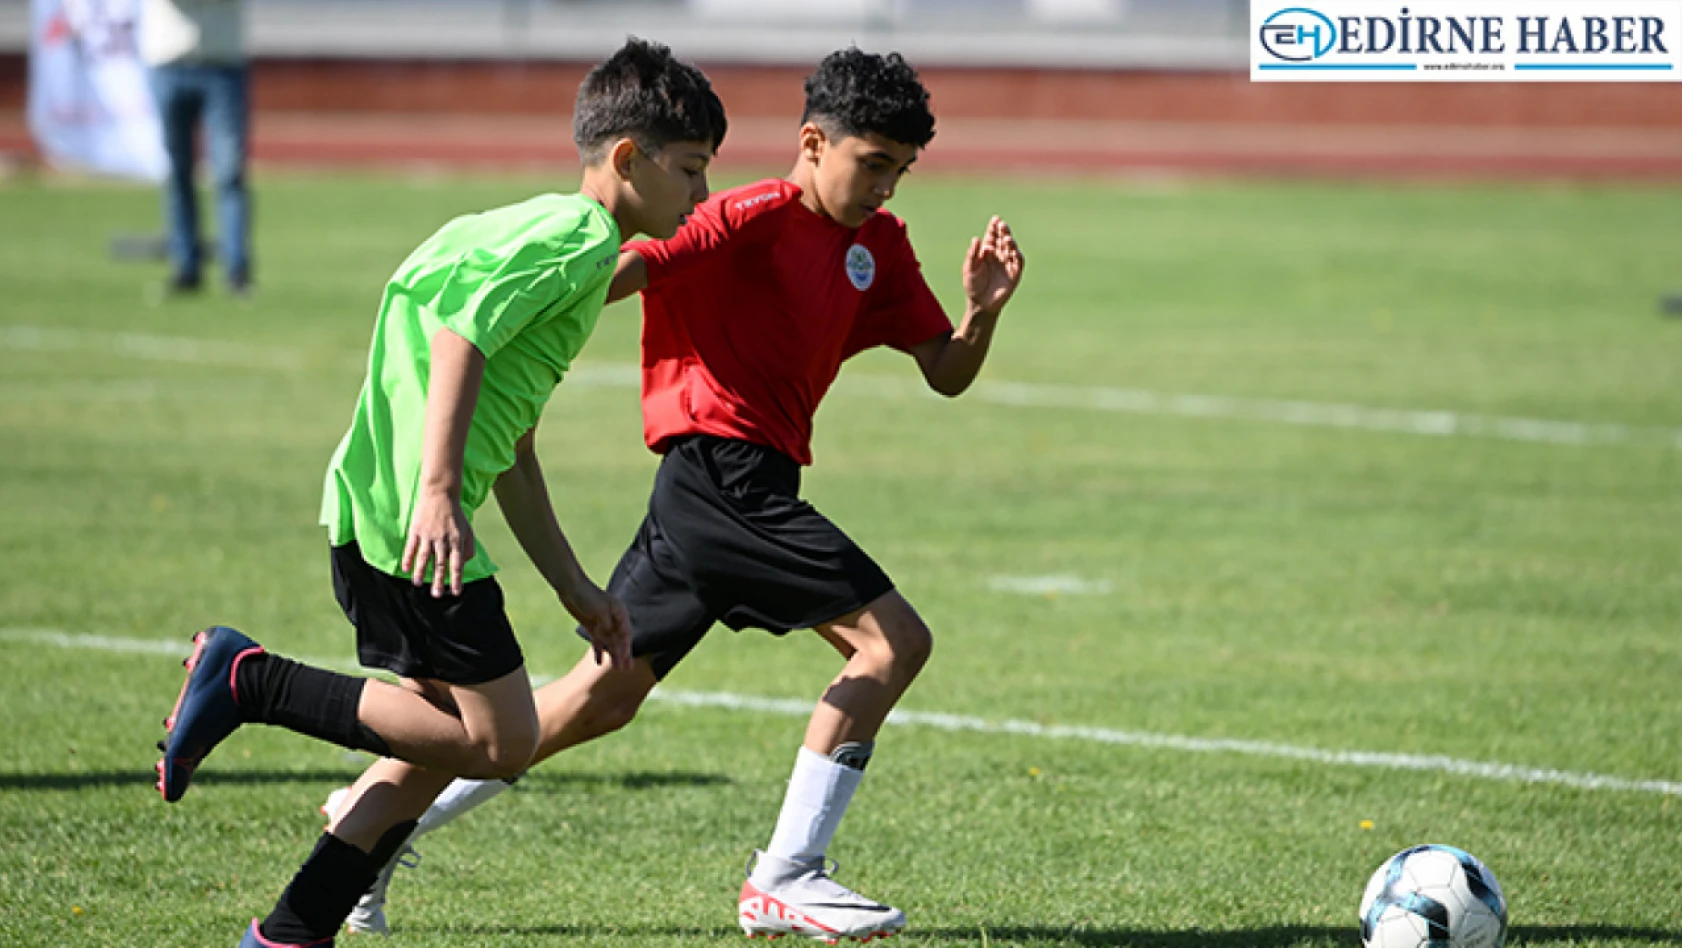 'Mahalle ligi' projesi kapsamındaki ortaokullar futbol final müsabakası yapıldı